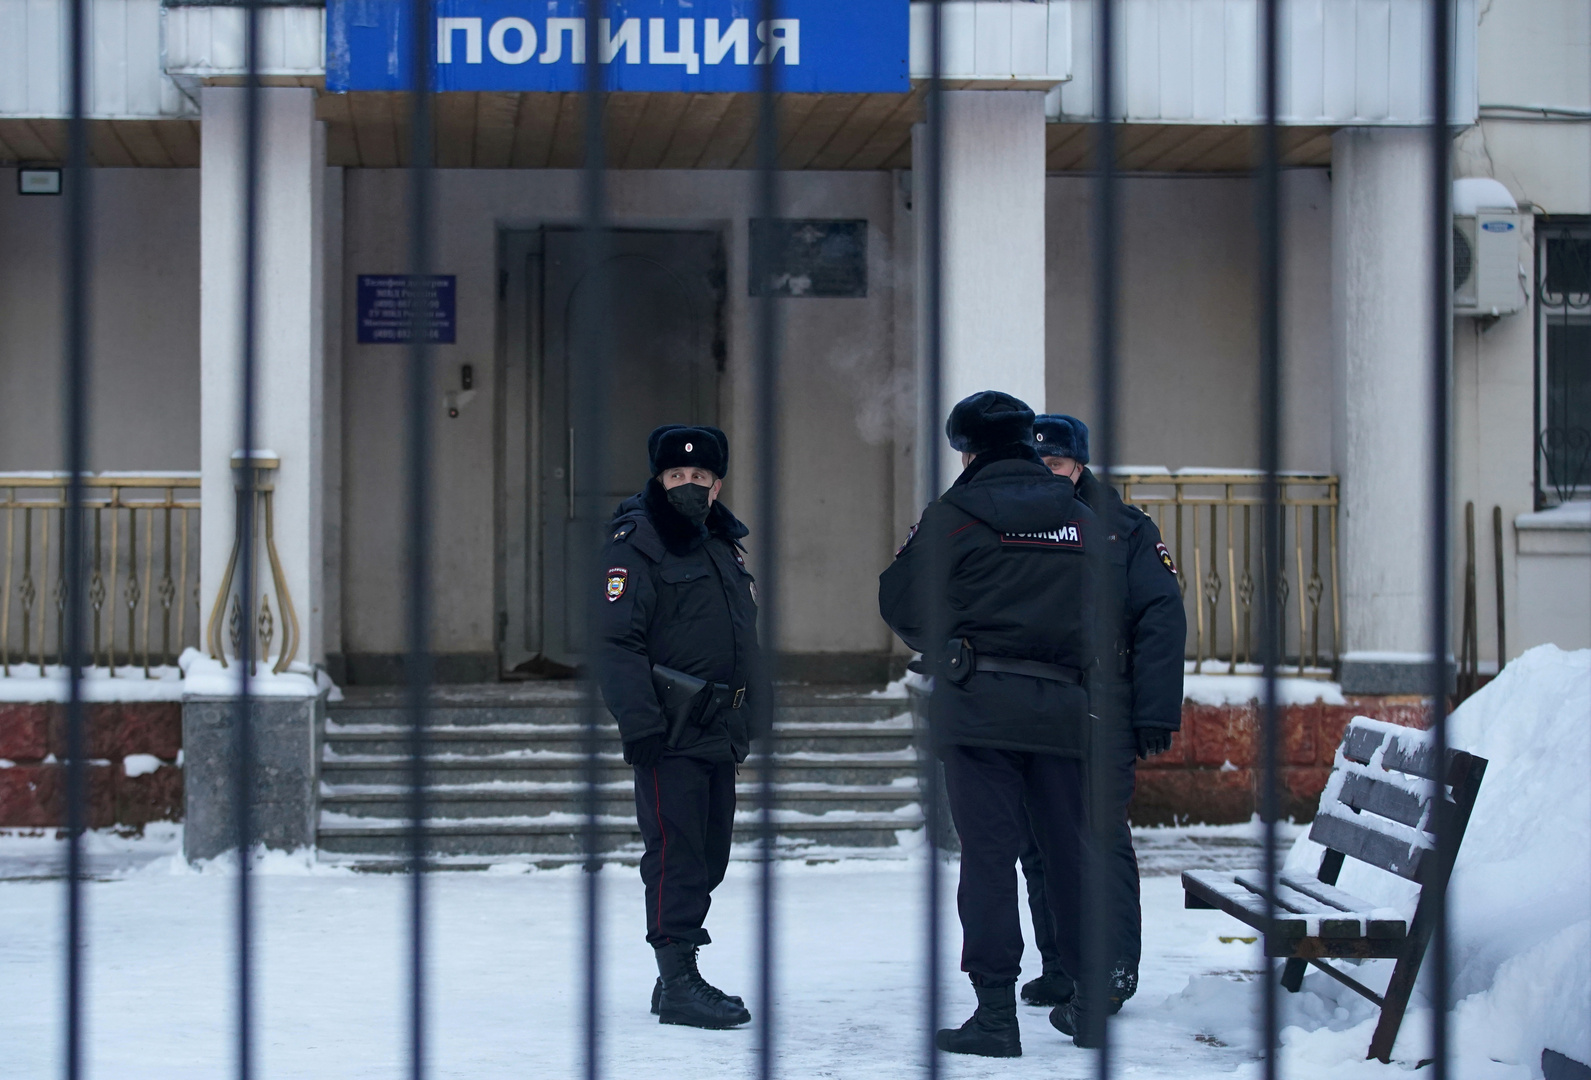 مقتل 3 أشخاص في هجوم بسكين في مدينة يكاترينبورغ الروسية